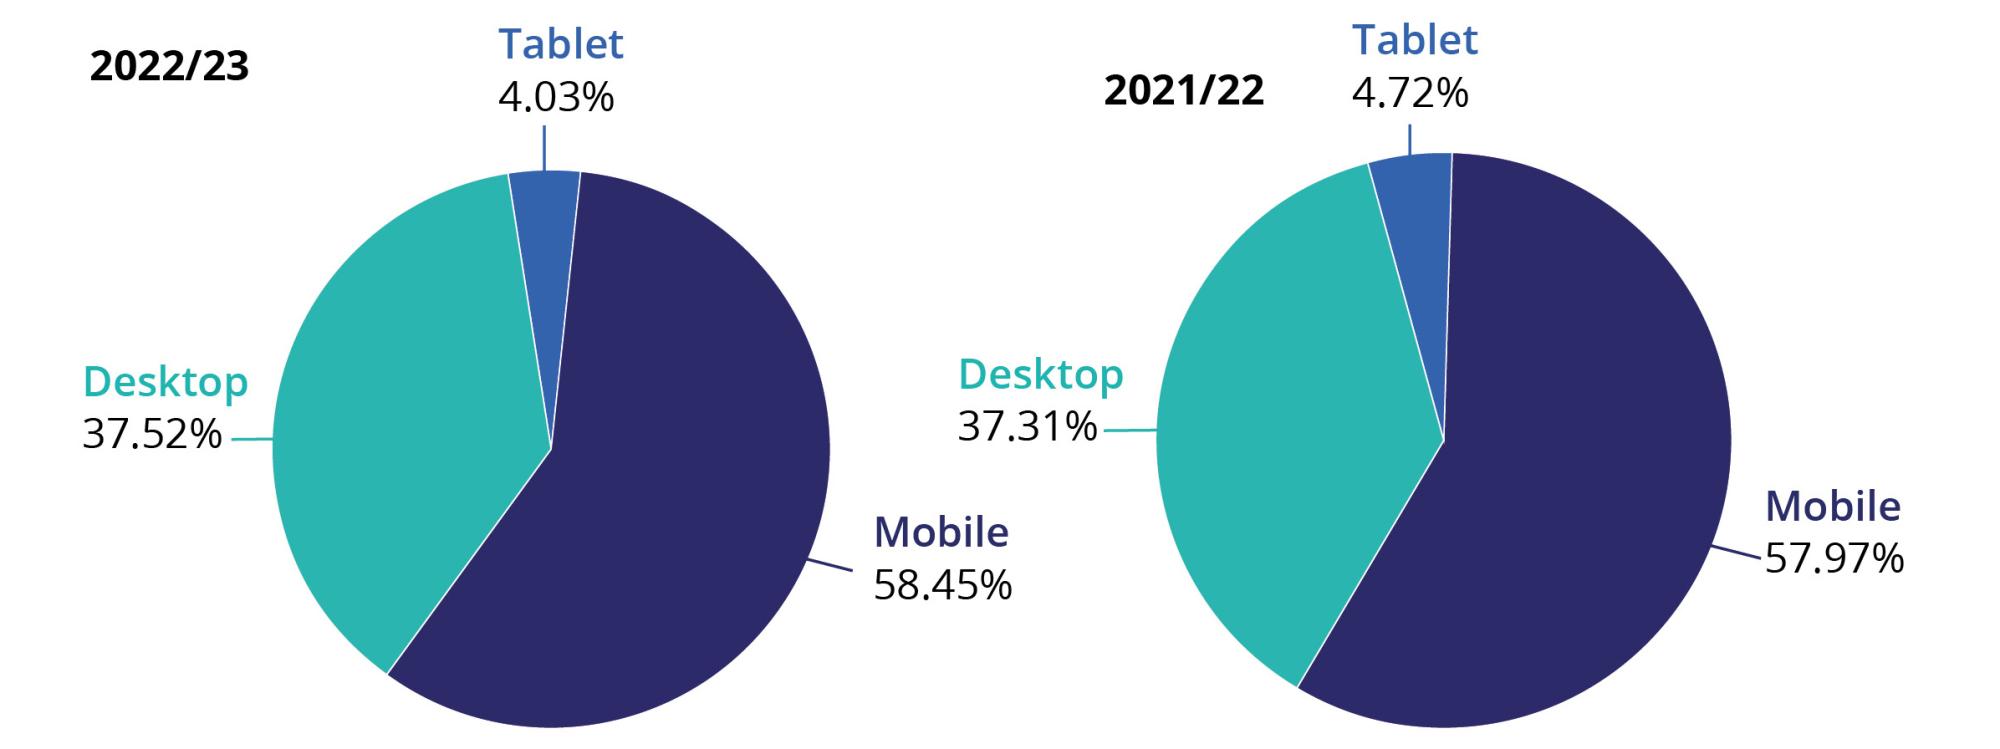 2022/23  Desktop 37.52%, Tablet 4.03%, Mobile 58.45% 2021/22 Desktop 37.31%, Tablet 4.72%, Mobile 57.97%